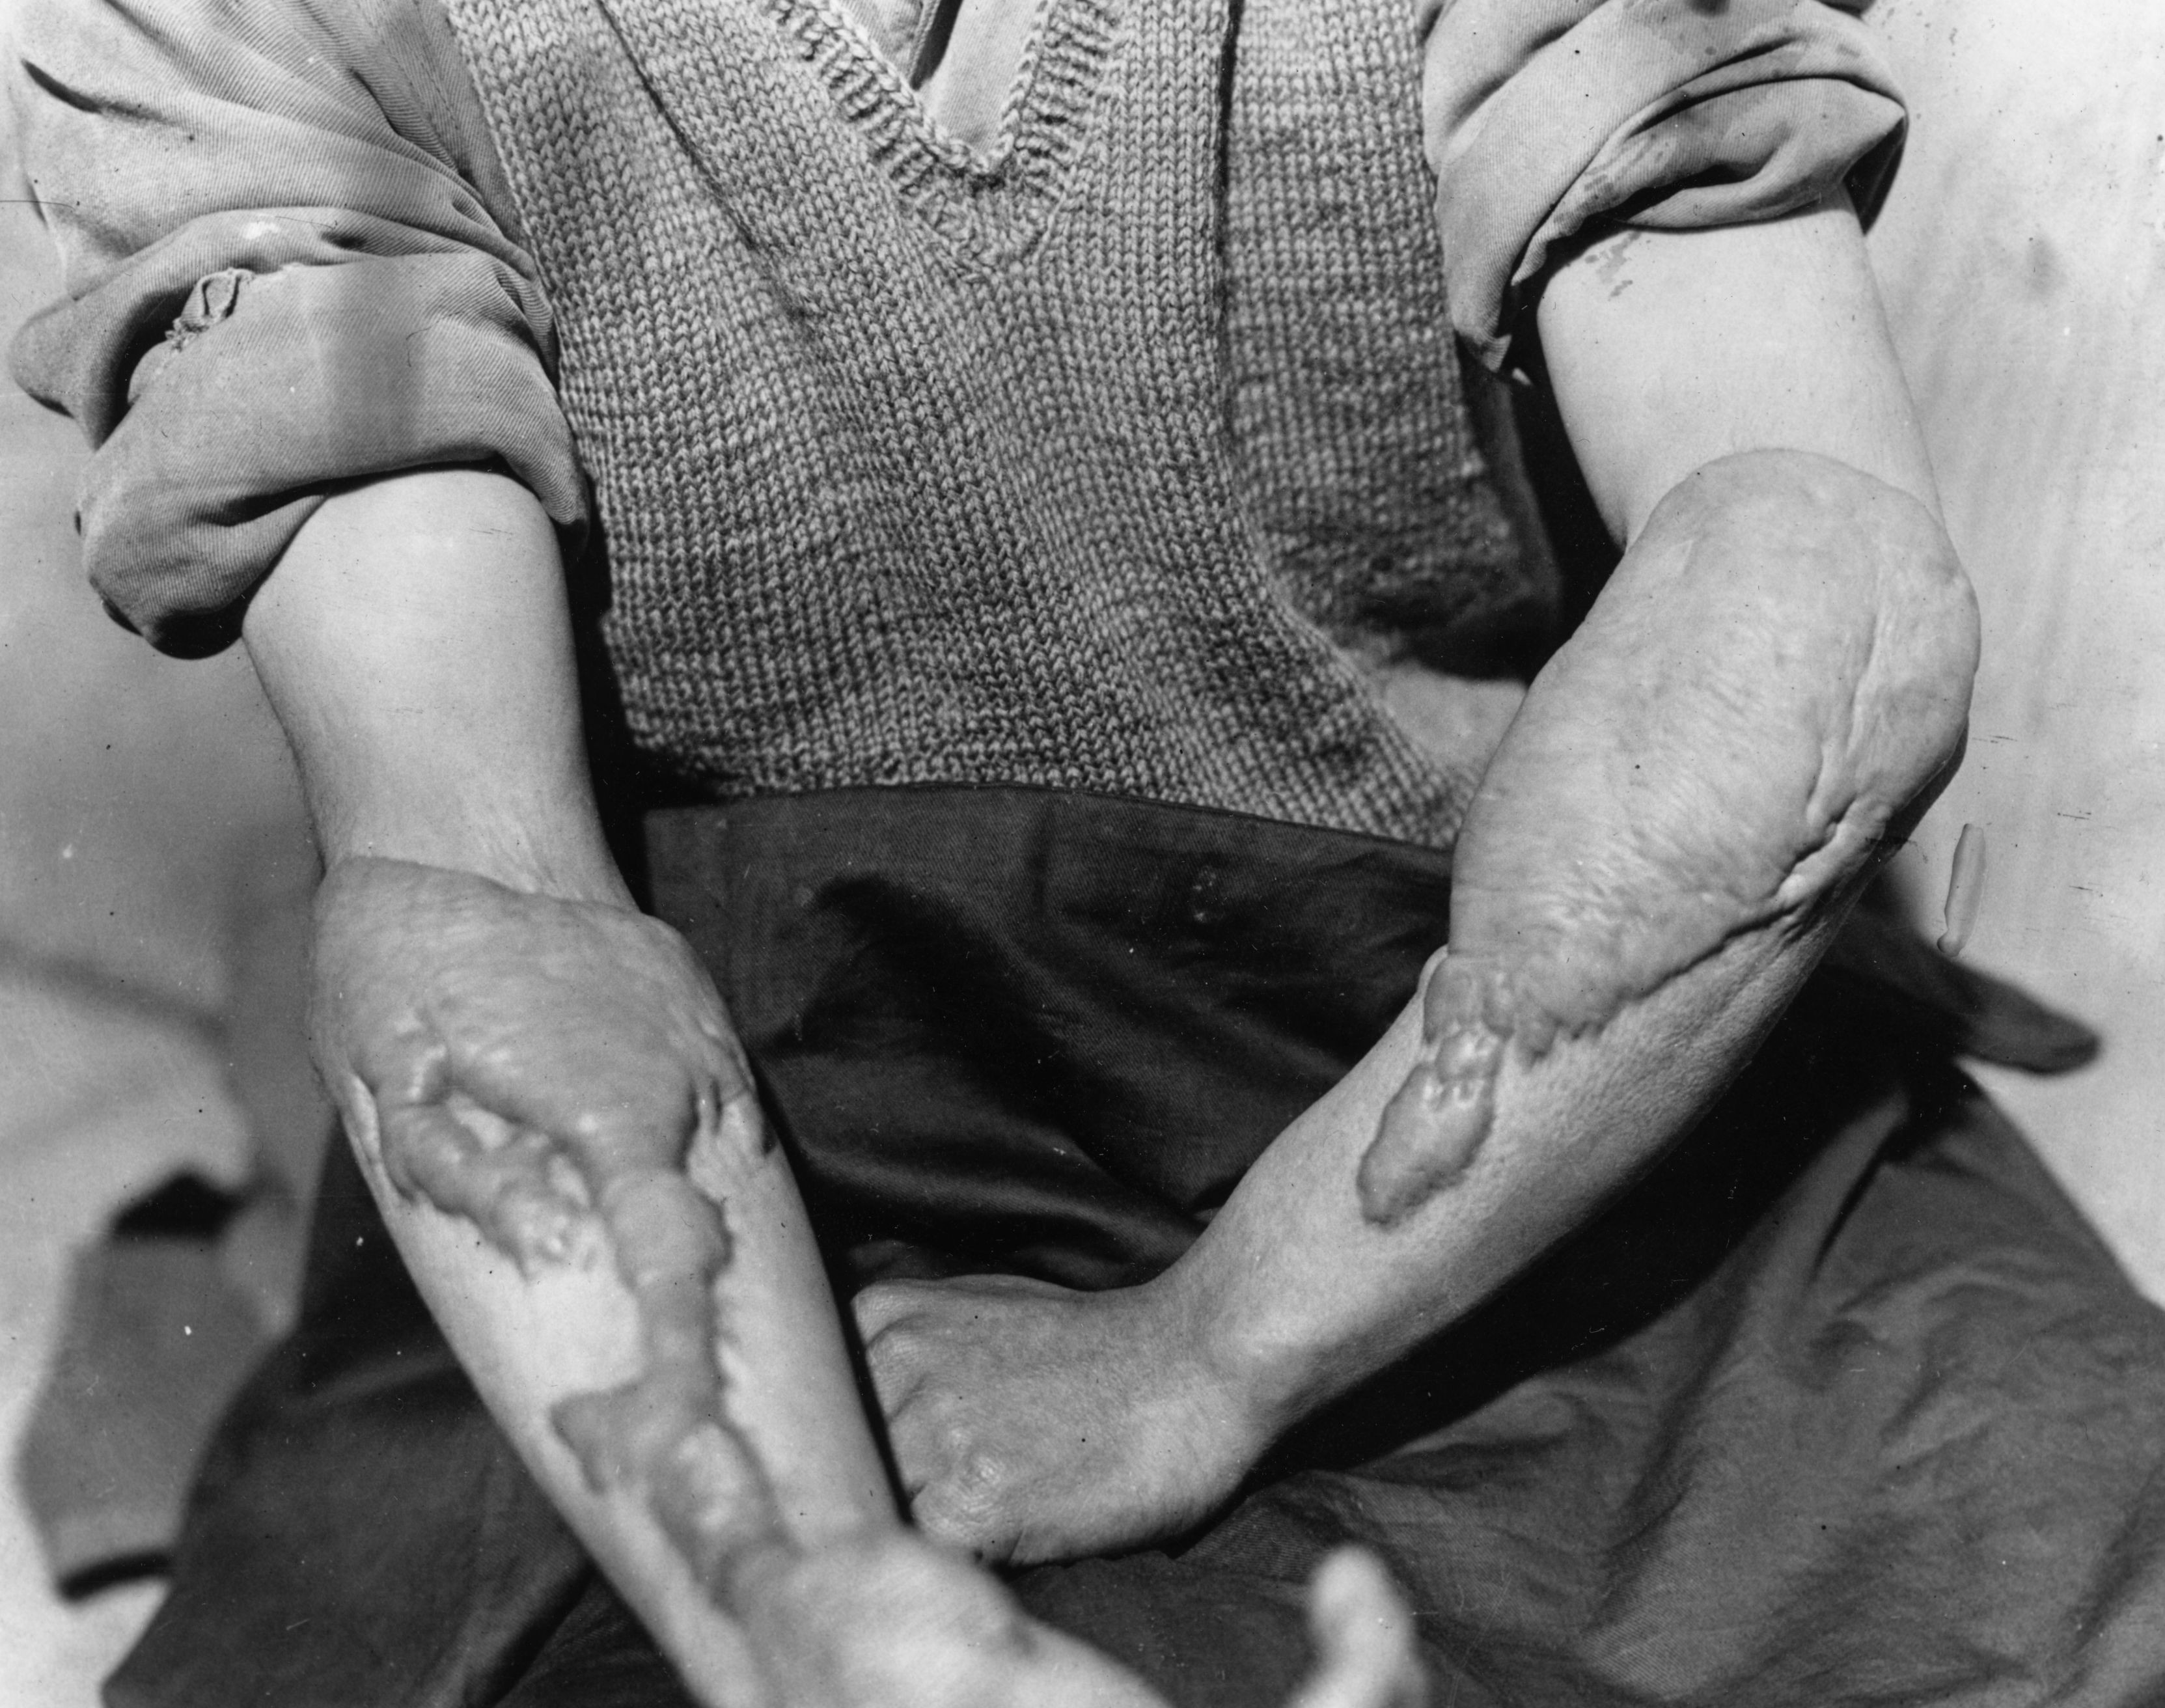 Homem vítima da bomba de Hiroshima com os braços queimados. (Foto: Keystone/Getty Images)